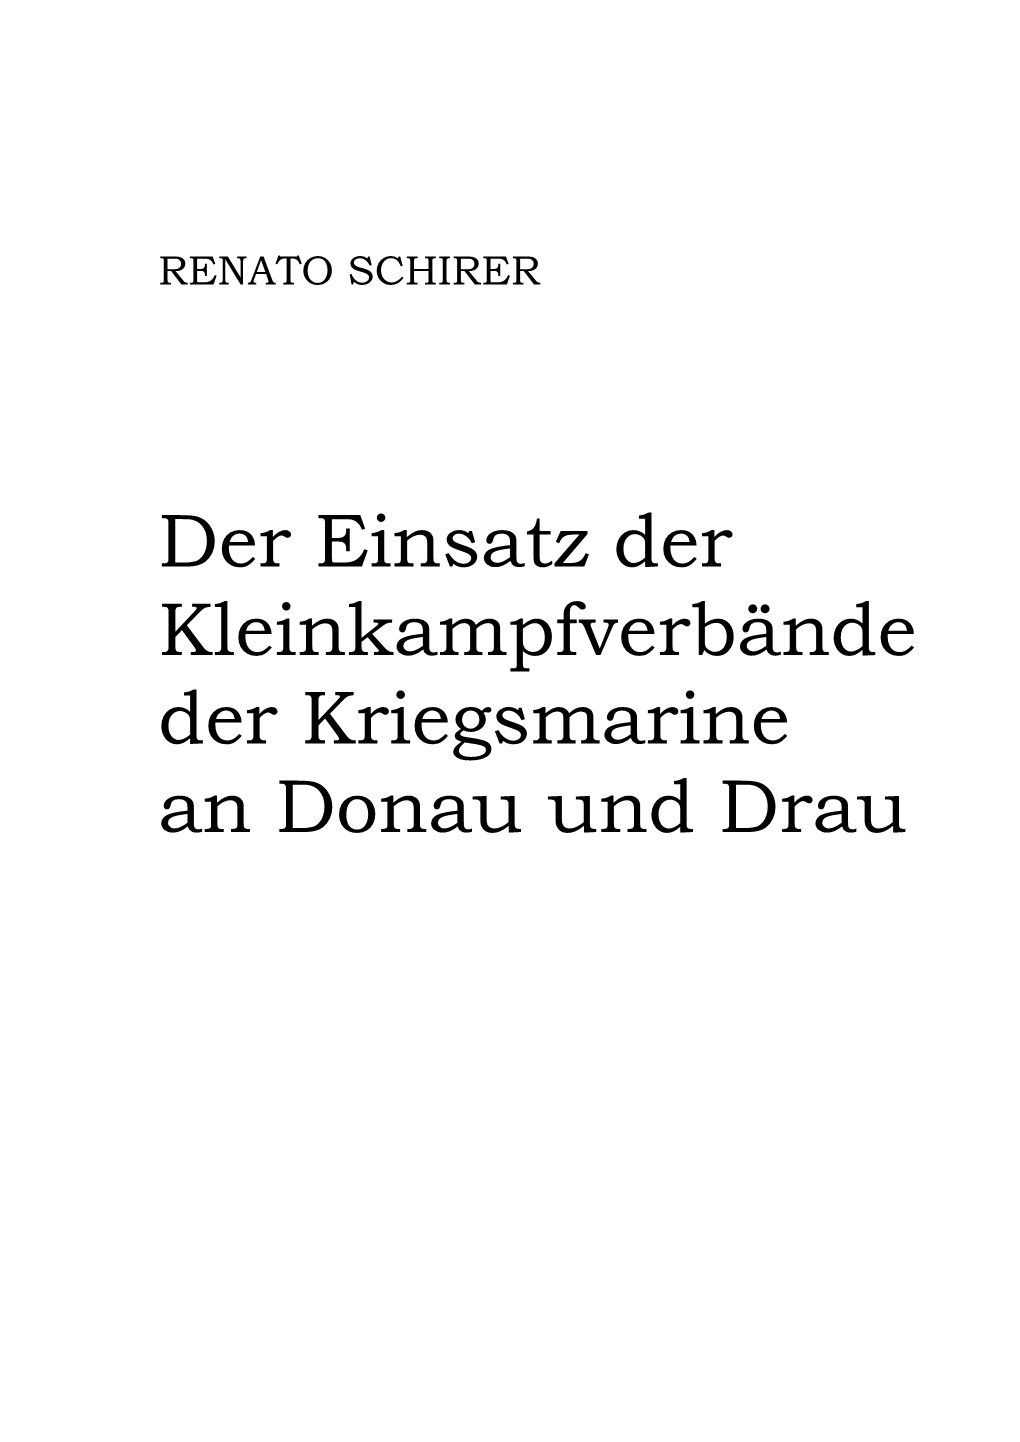 Der Einsatz Der Kleinkampfverbände Der Kriegsmarine an Donau Und Drau Renato Schirer St